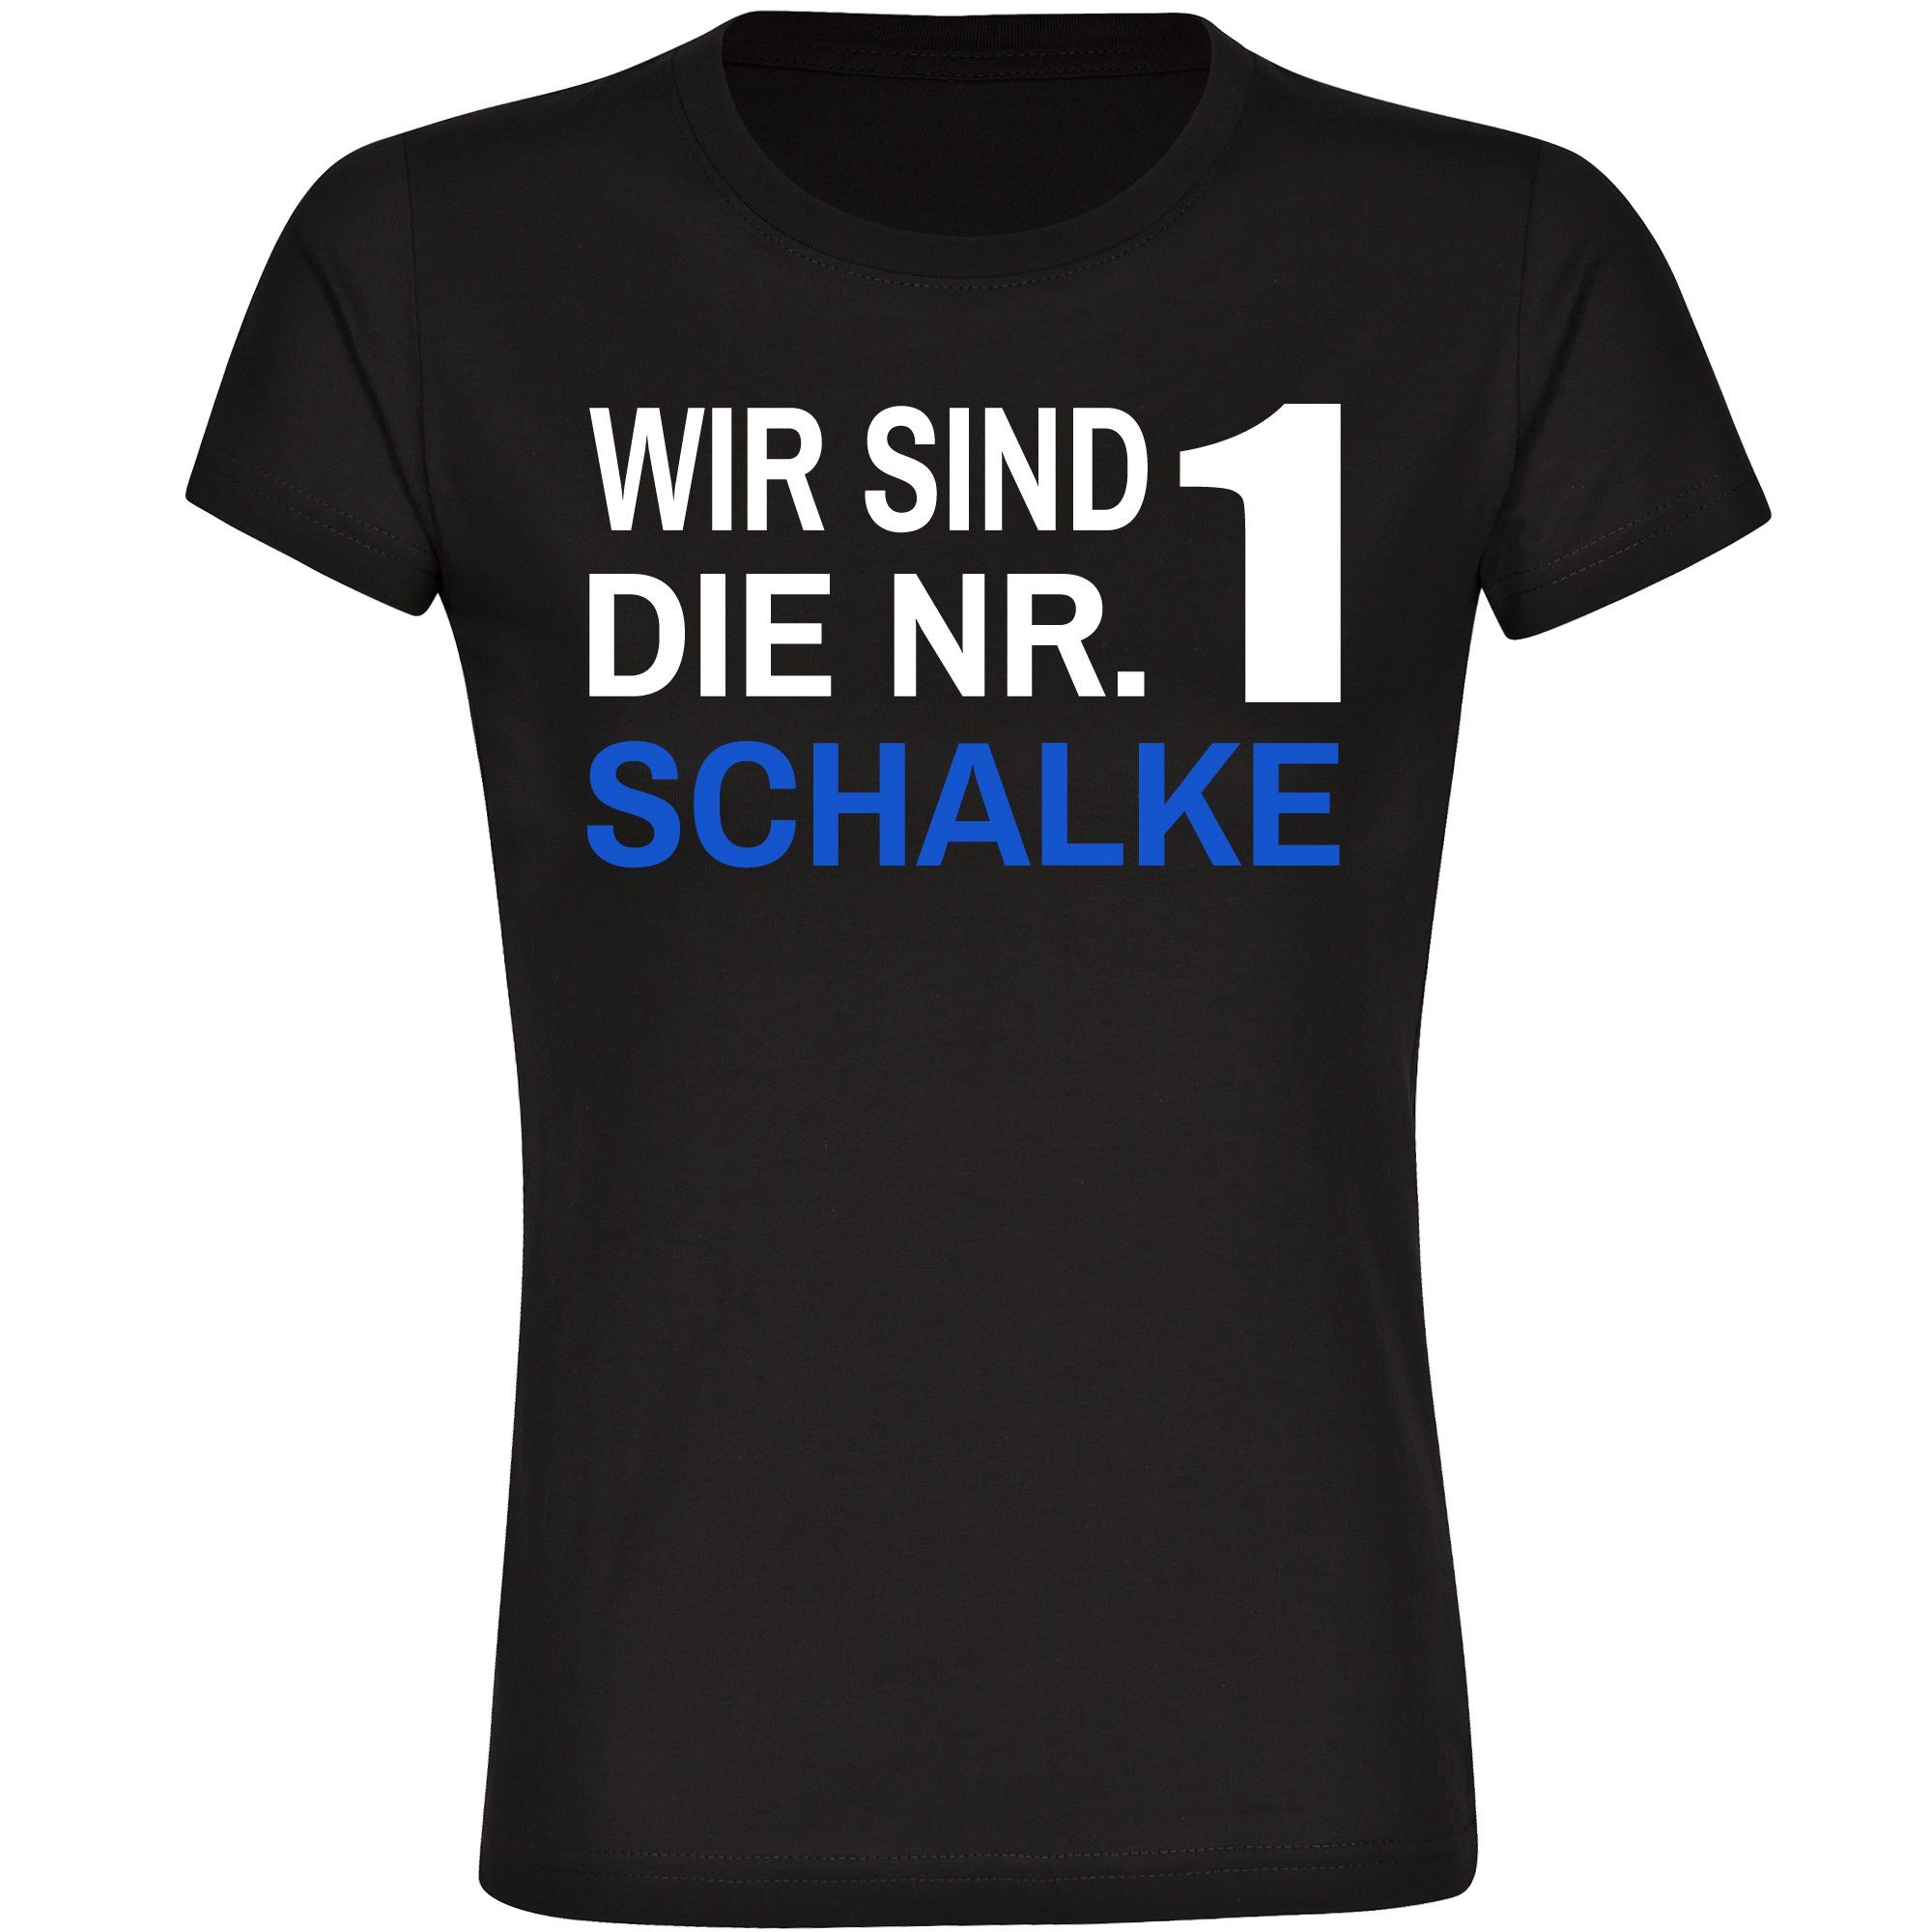 multifanshop T-Shirt Damen Schalke - Wir sind die Nr. 1 - Frauen